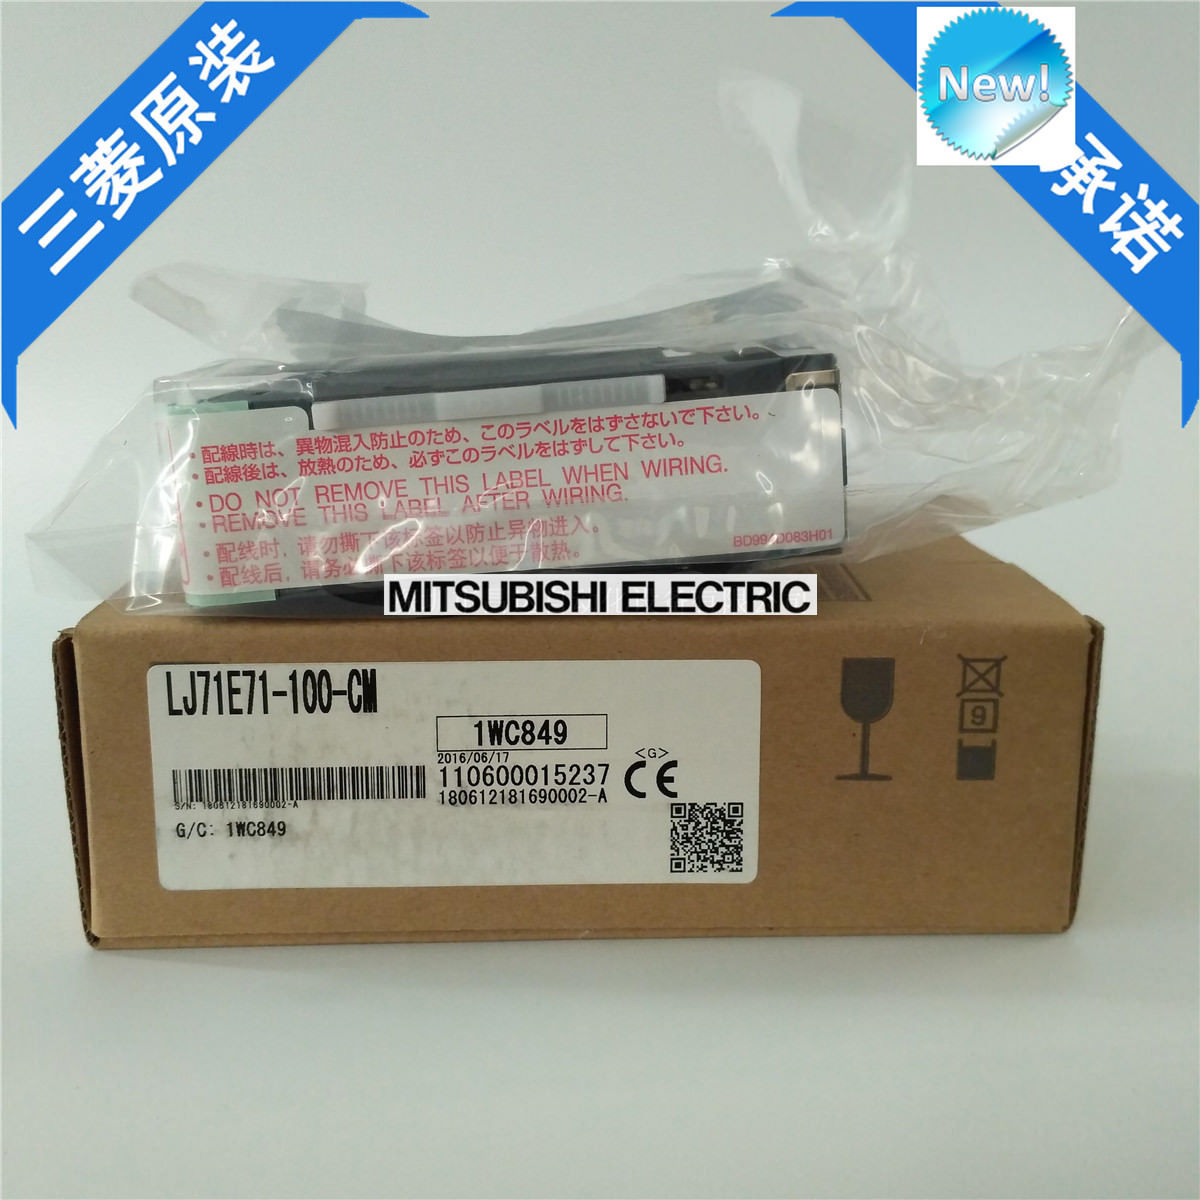 Brand New Mitsubishi PLC LJ71E71-100-CM In Box LJ71E71100CM